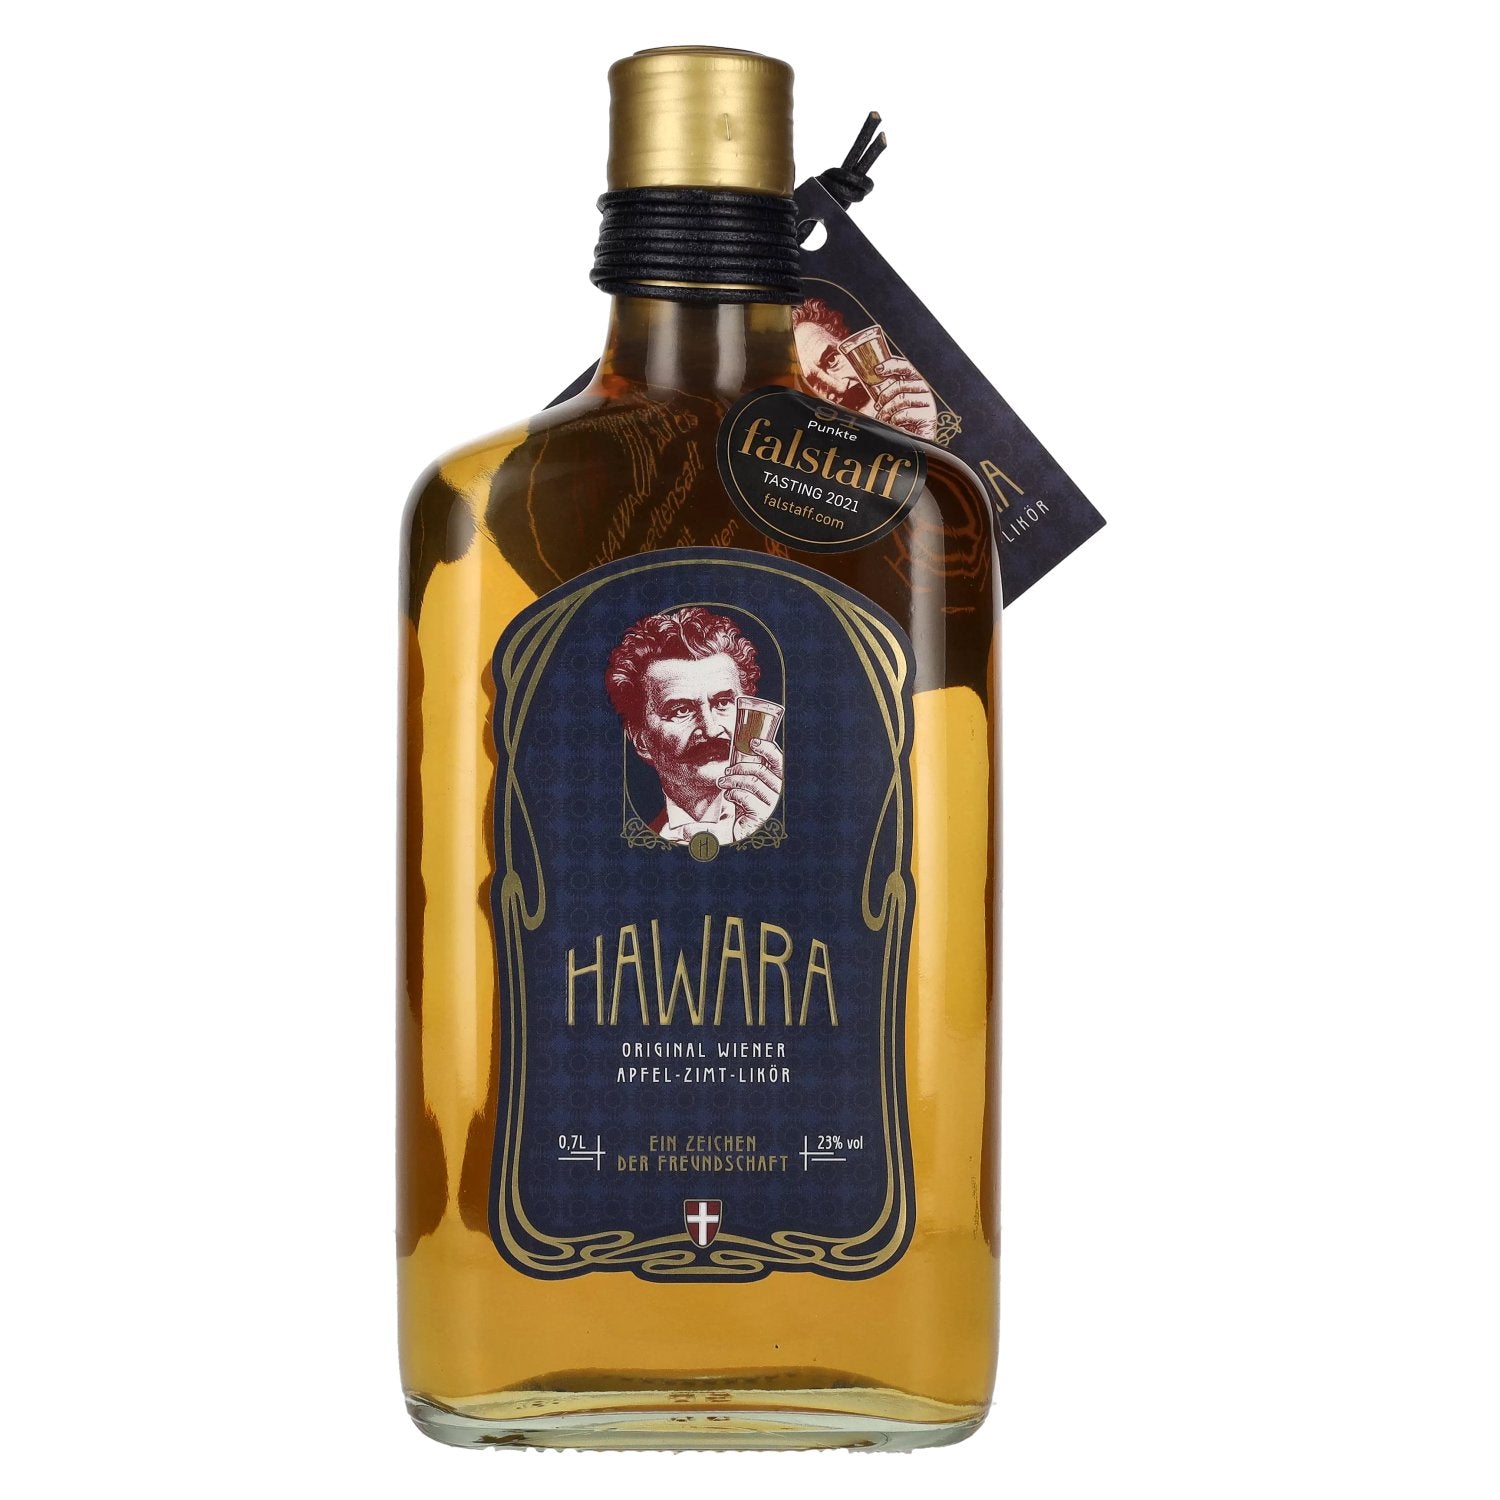 HAWARA Apfel-Zimt-Likoer 23% Vol. 0,7l